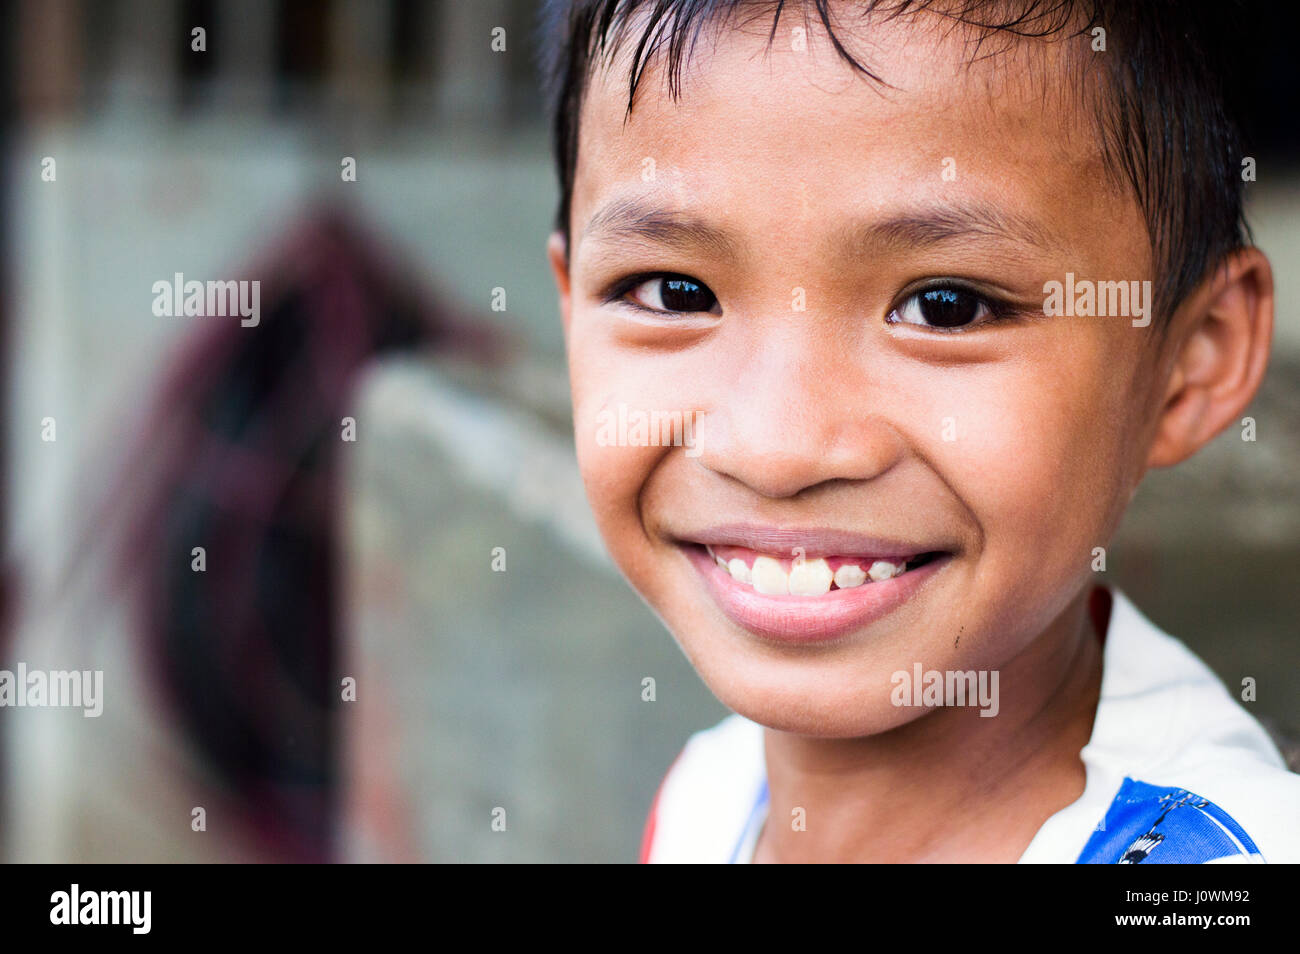 Jeune garçon, Calbayog, Samar, aux Philippines Banque D'Images